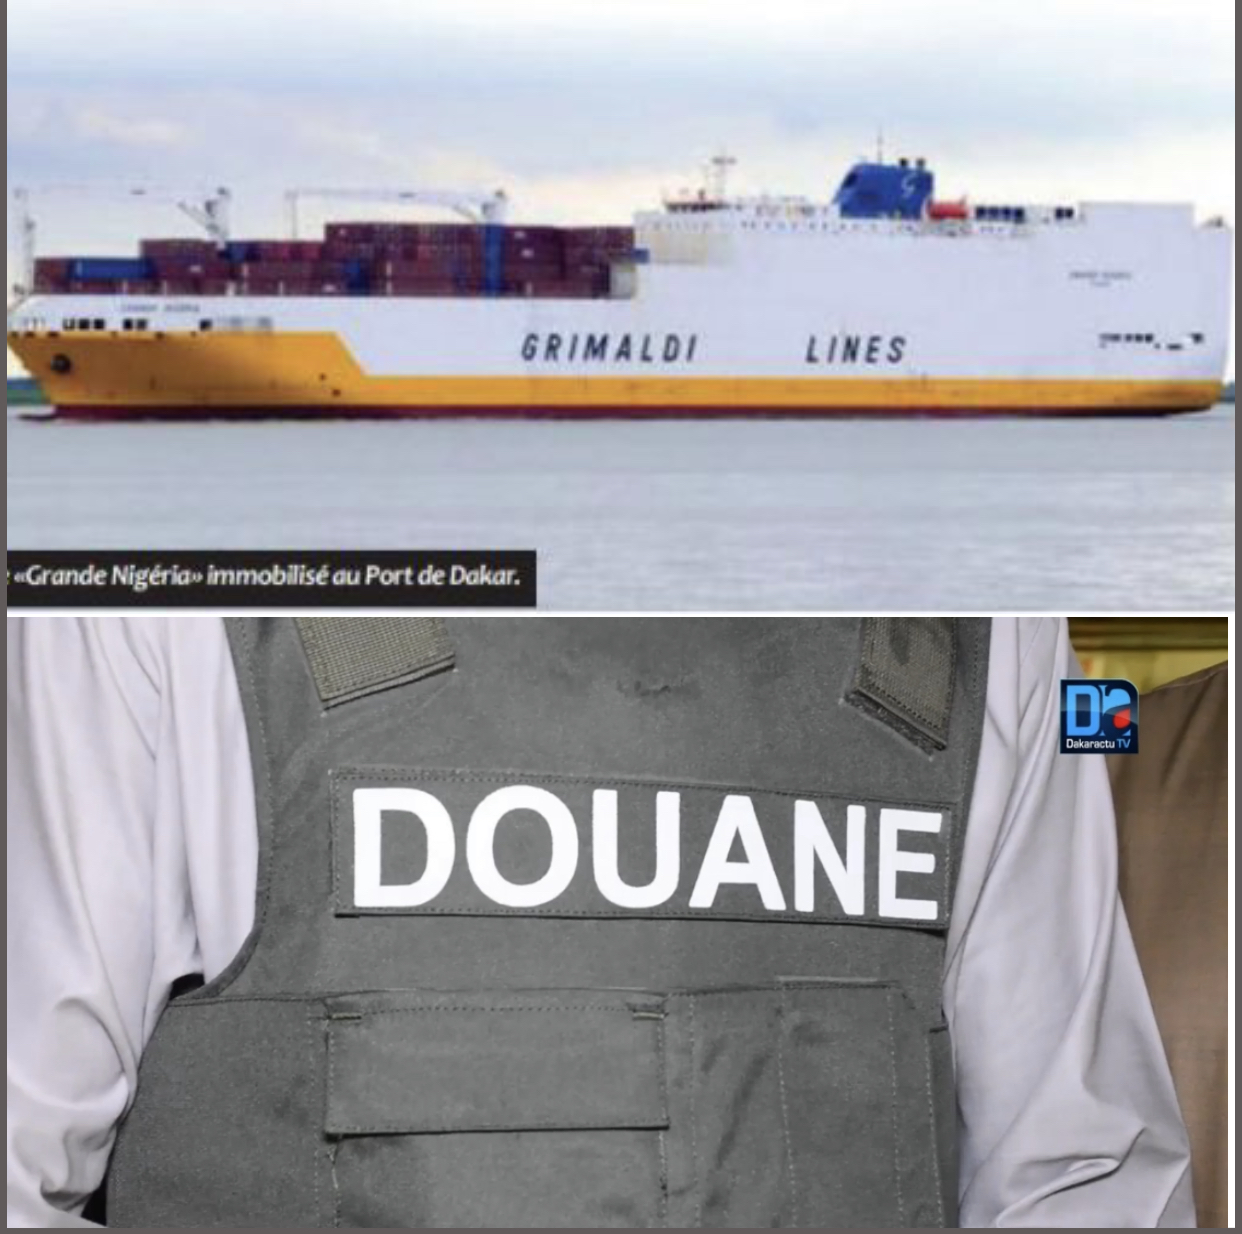 Port Autonome de Dakar : La Douane saisit 120KG de cocaïne dans le navire « Grande Nigeria » où les 700 KG avaient été trouvés en juin dernier.